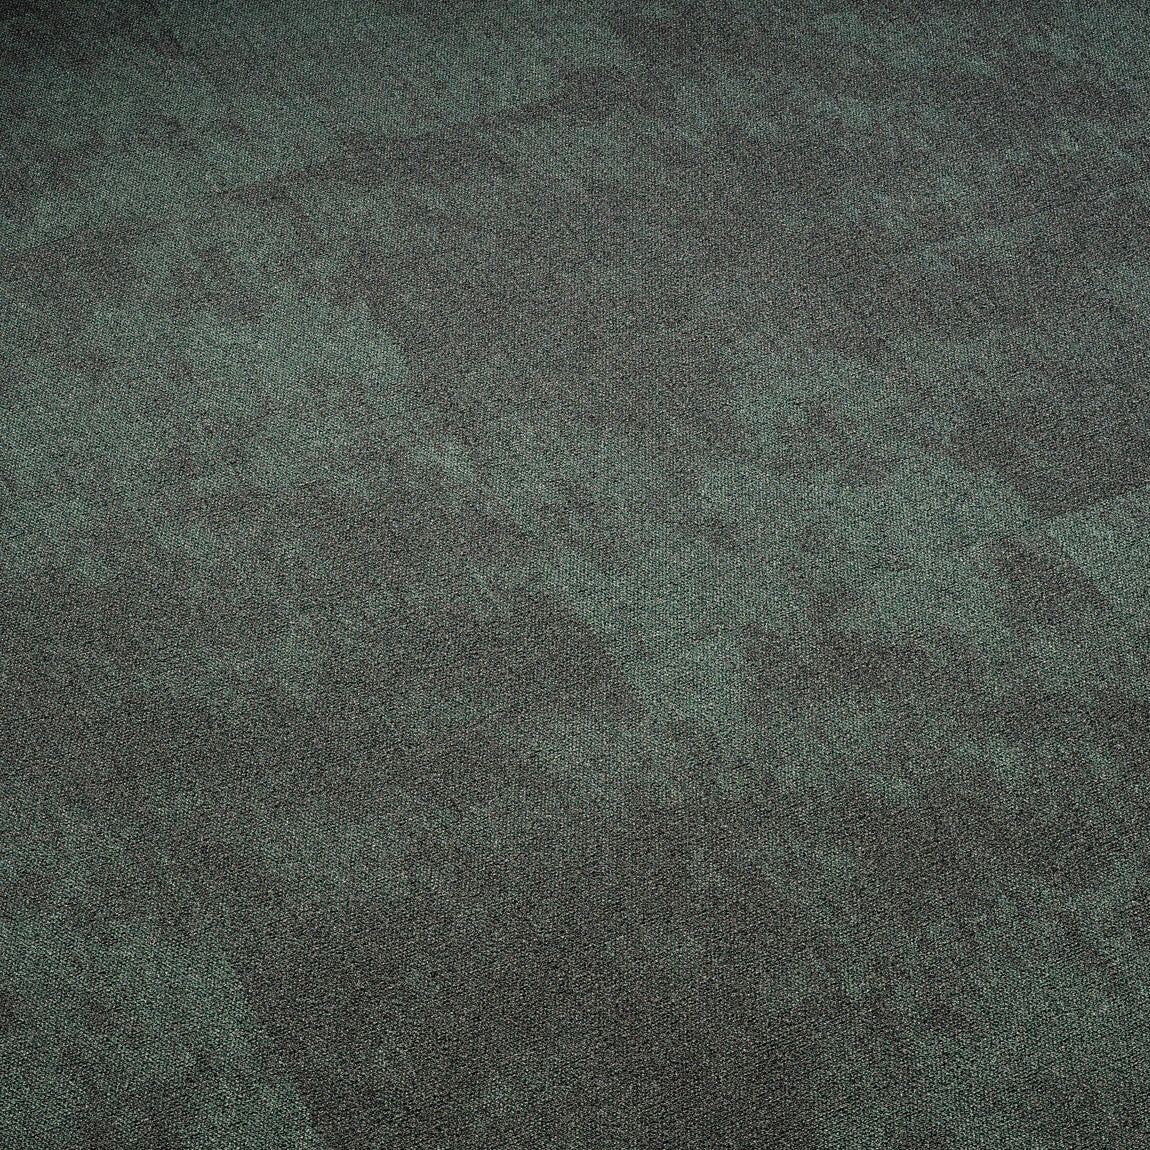 Plusfloor Sidewalk Urban Park carpet tiles for offices 100% Nylon